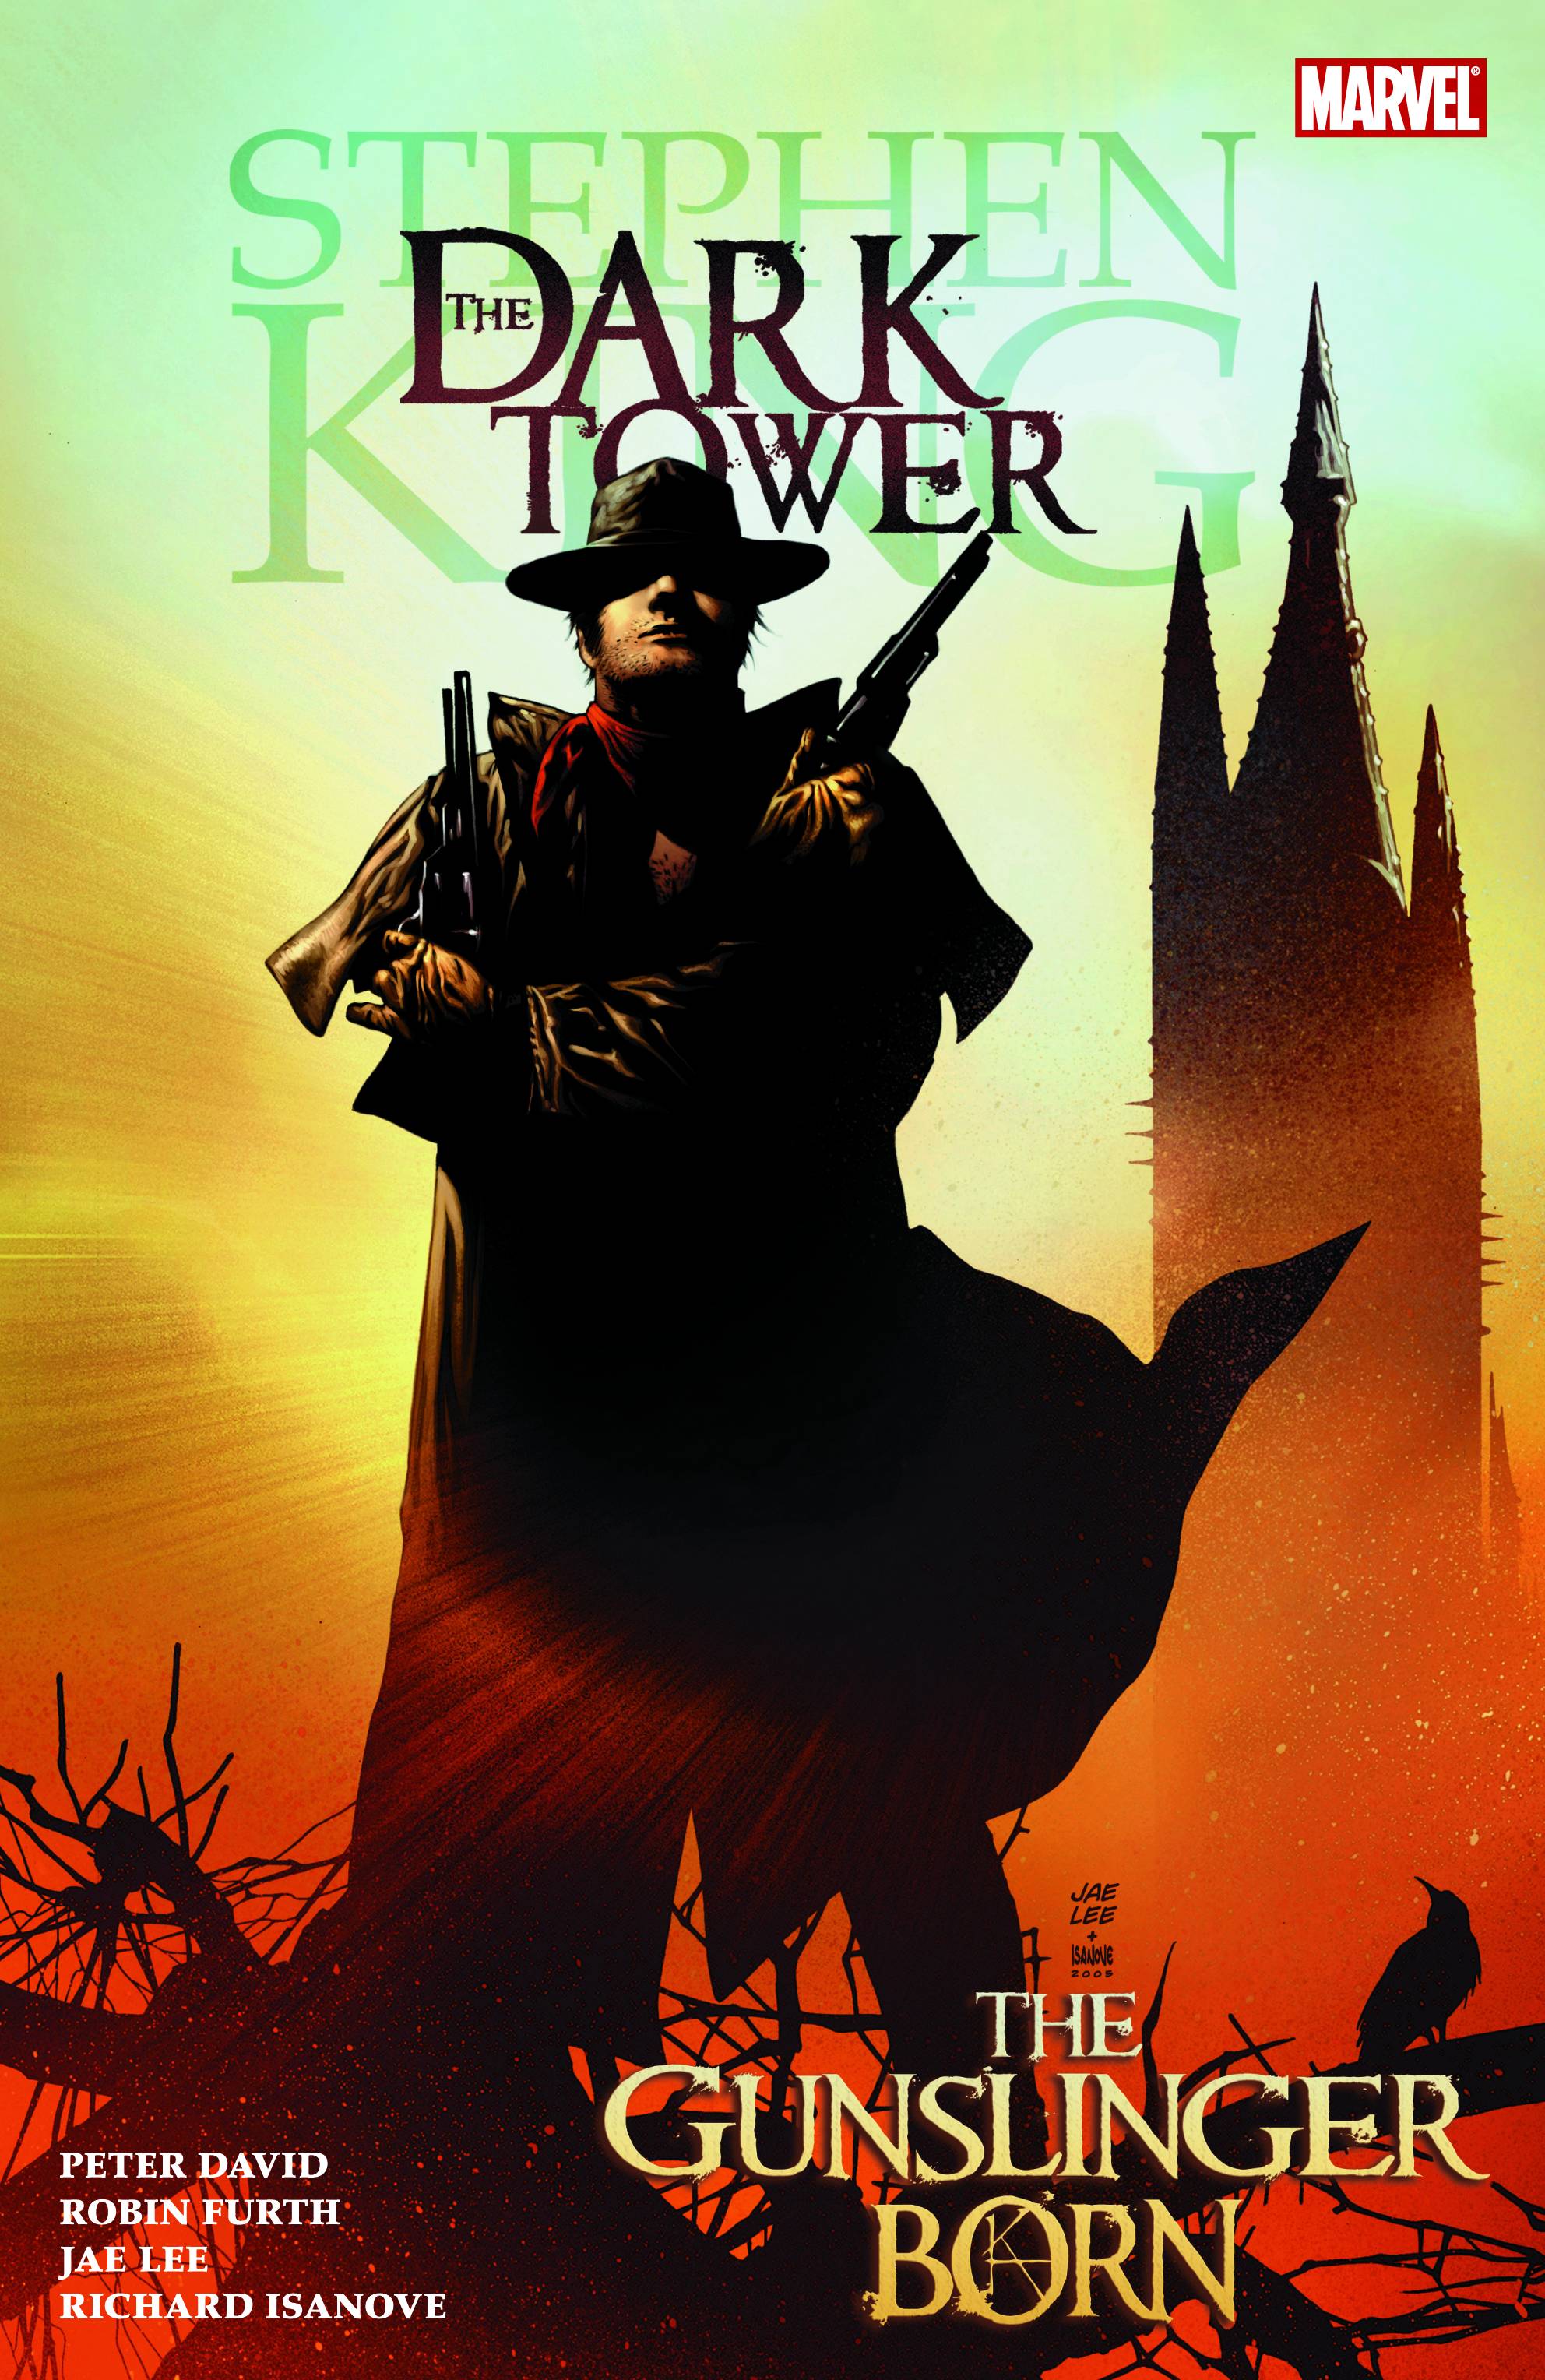 Dark Tower The Gunslinger Born Graphic Novel